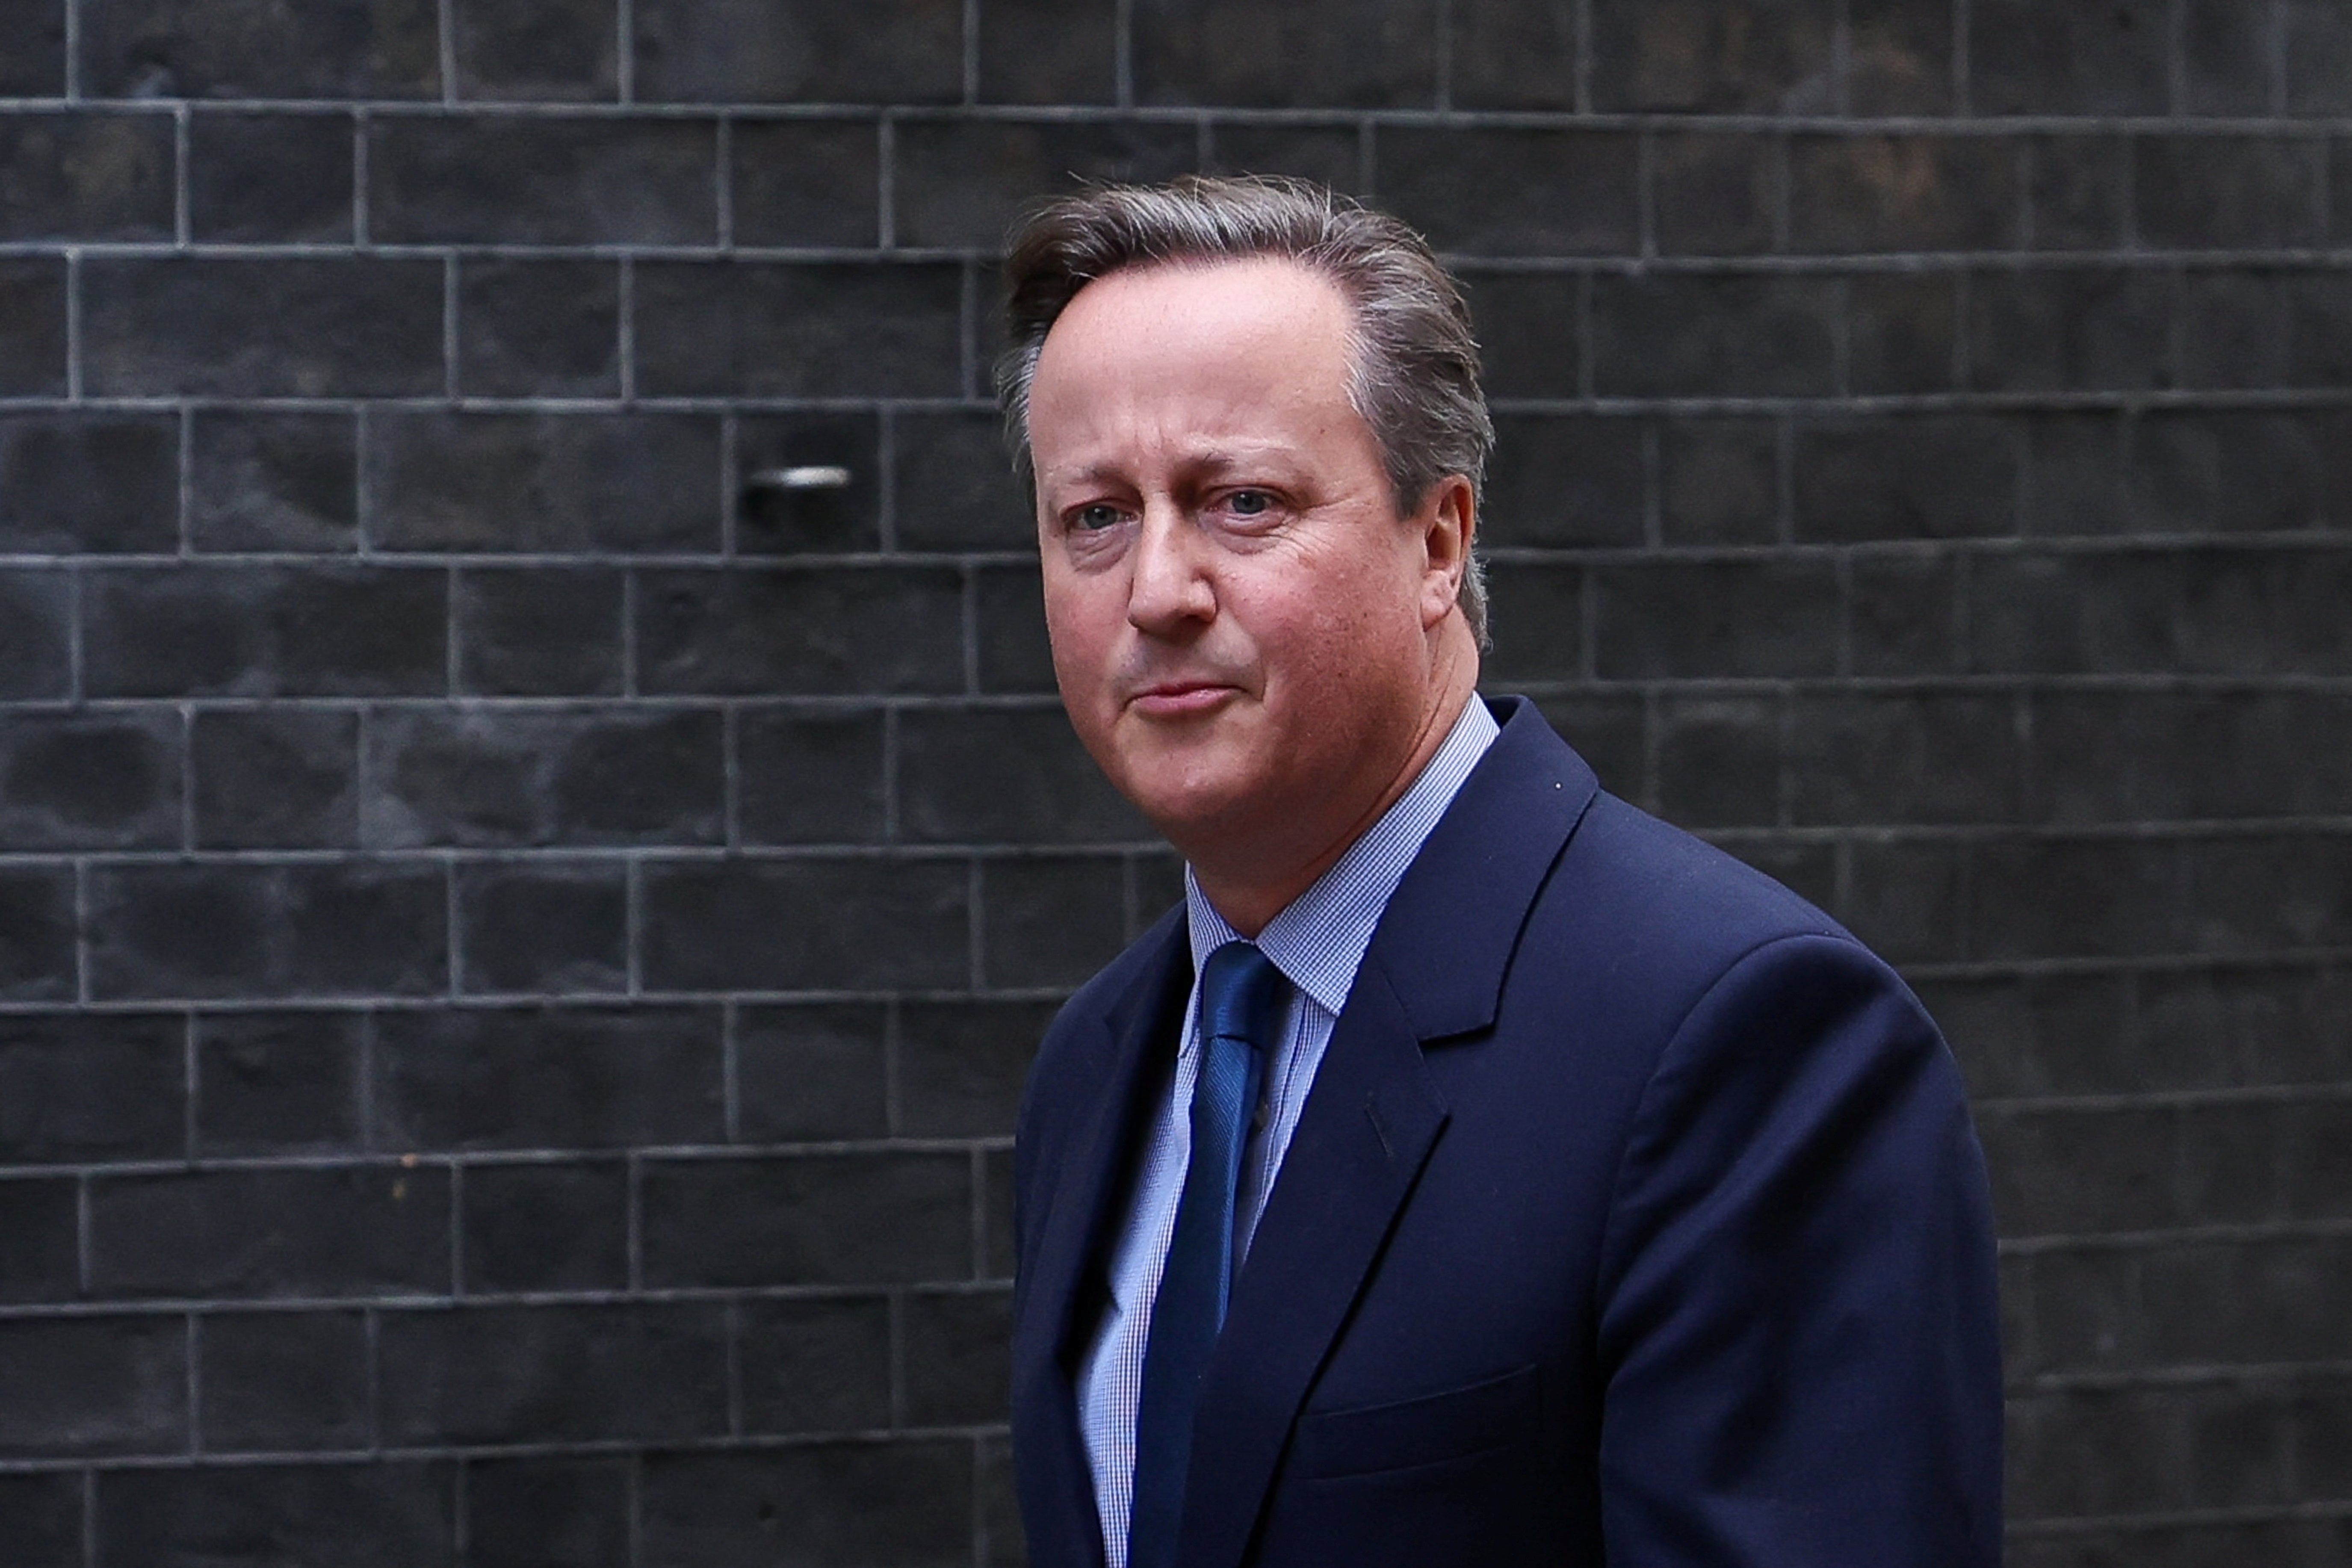 David Cameron walking into No 10 on Monday morning